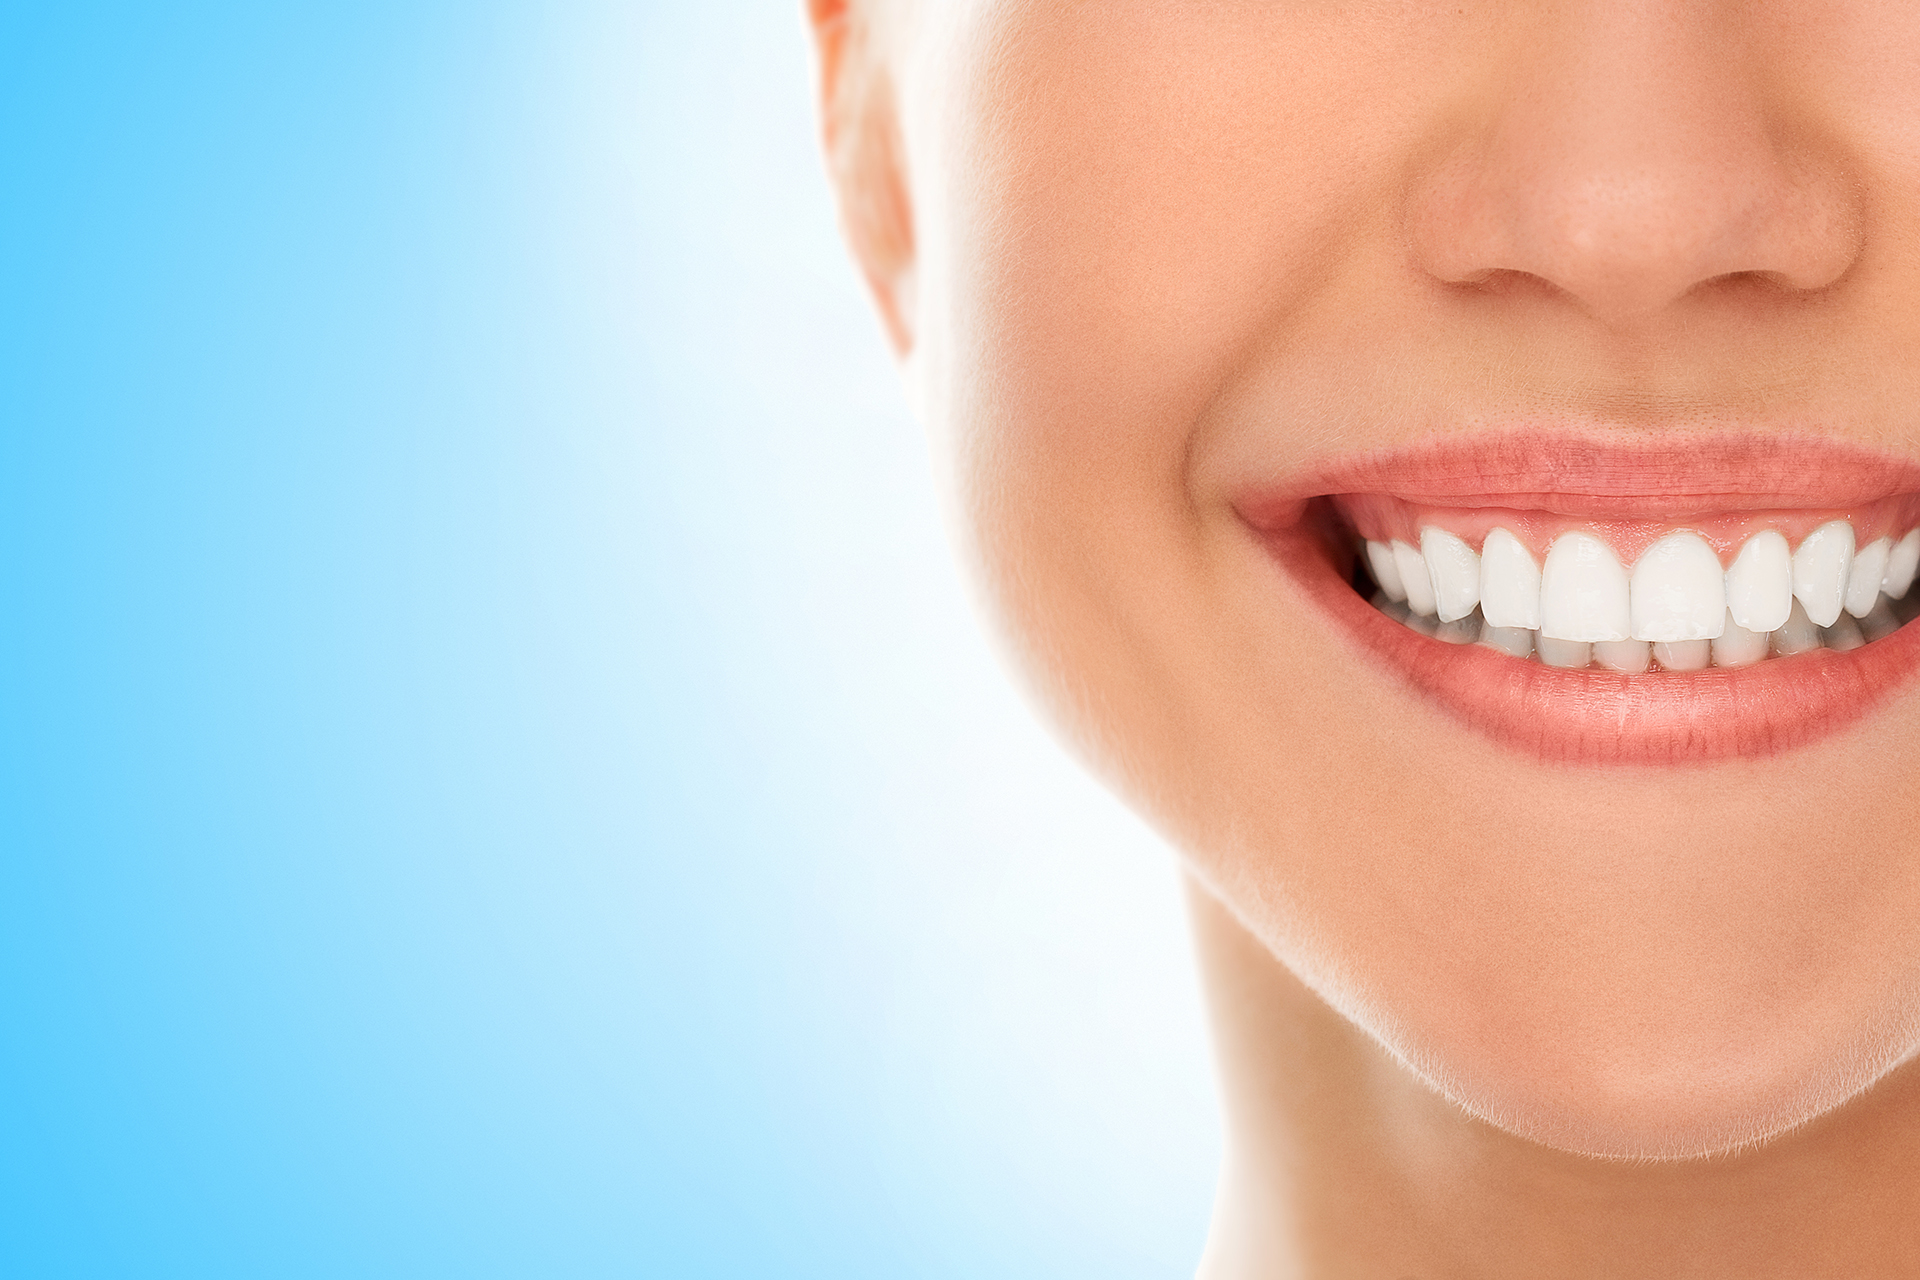 Reasons for Dental Veneer Damage